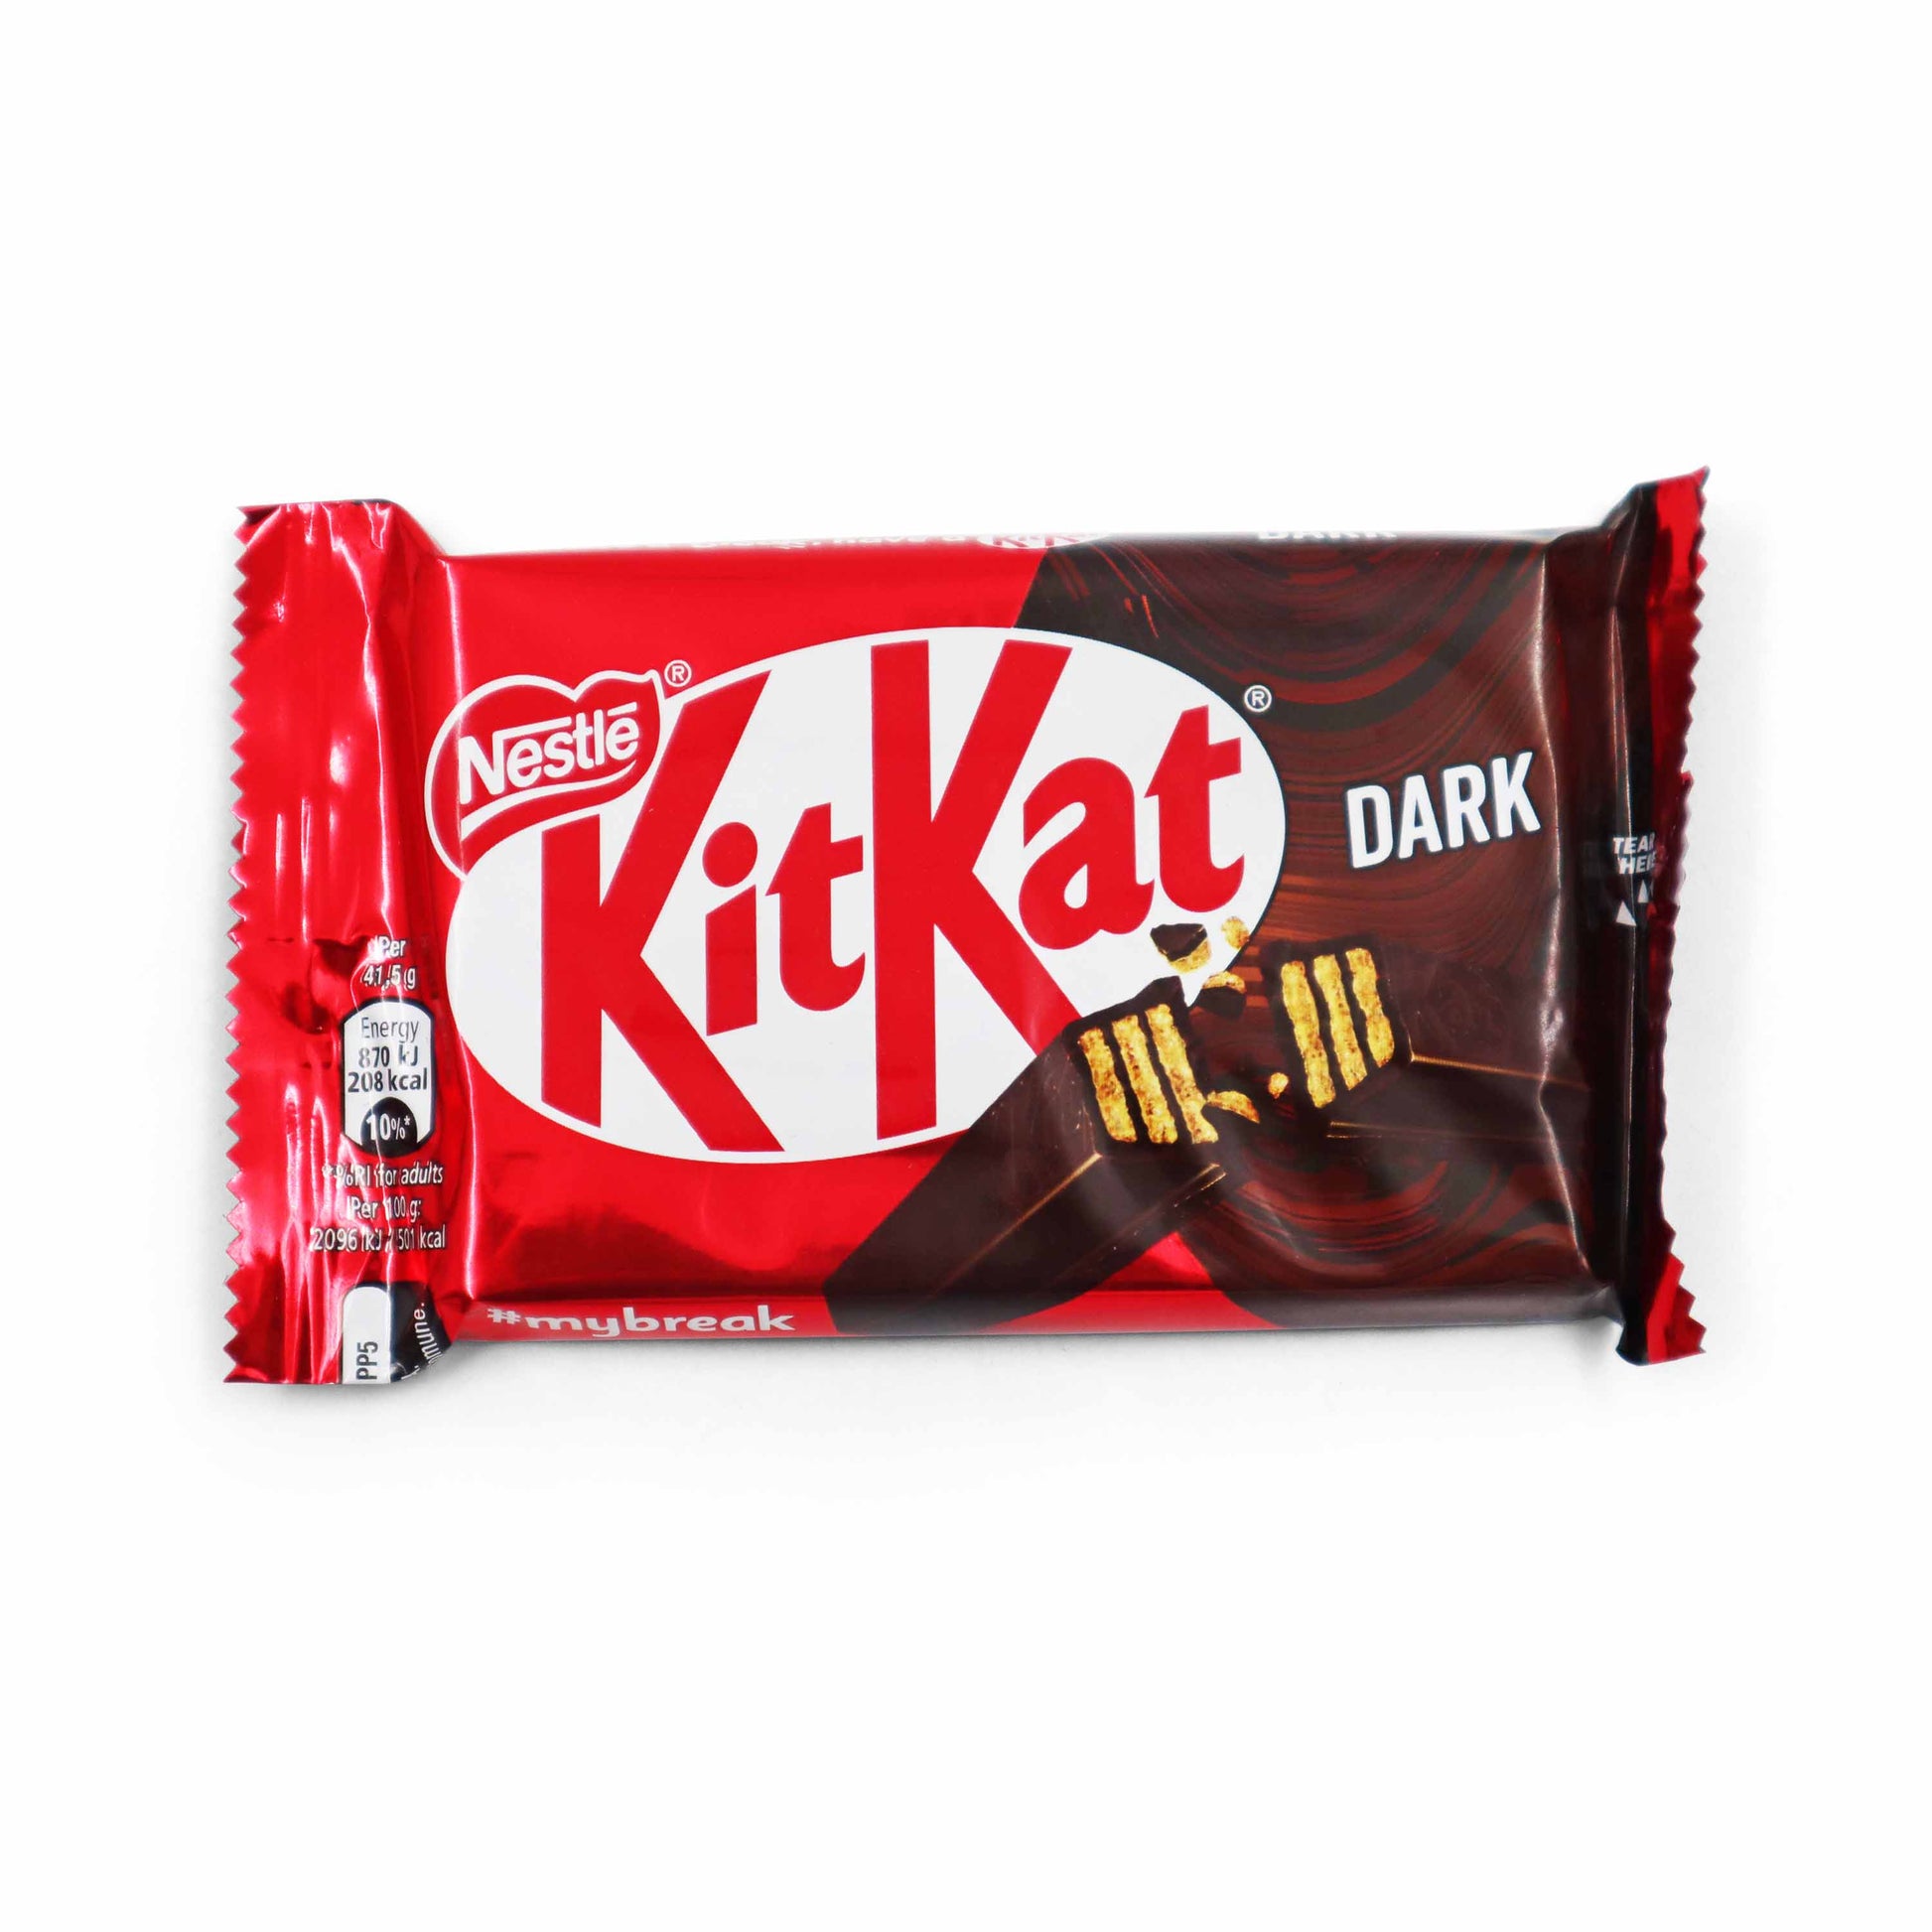 Kit Kat 4 Finger Dark Chocolate Bar 41.5g